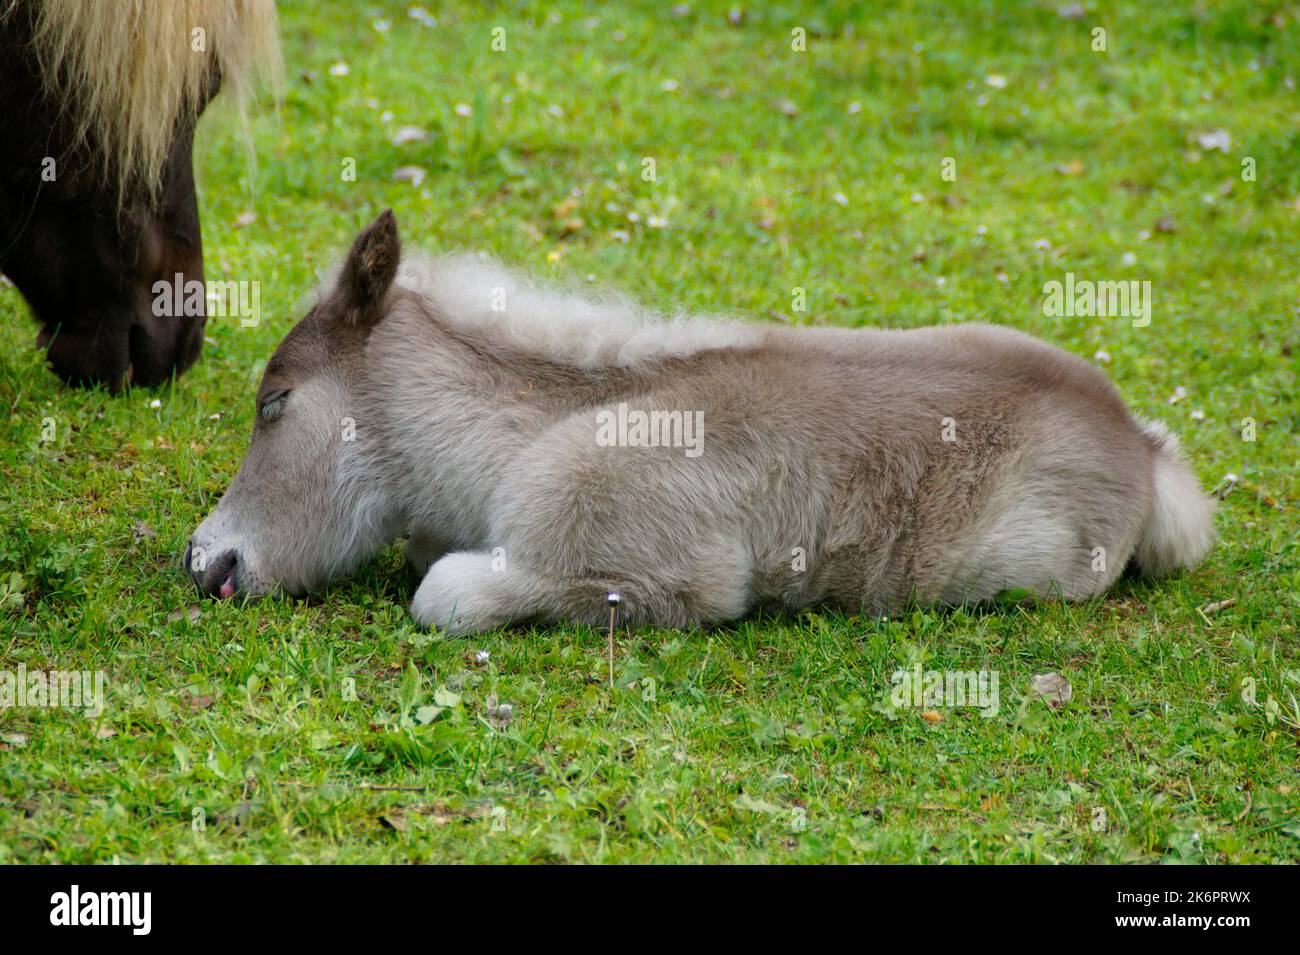 fluffy baby horses